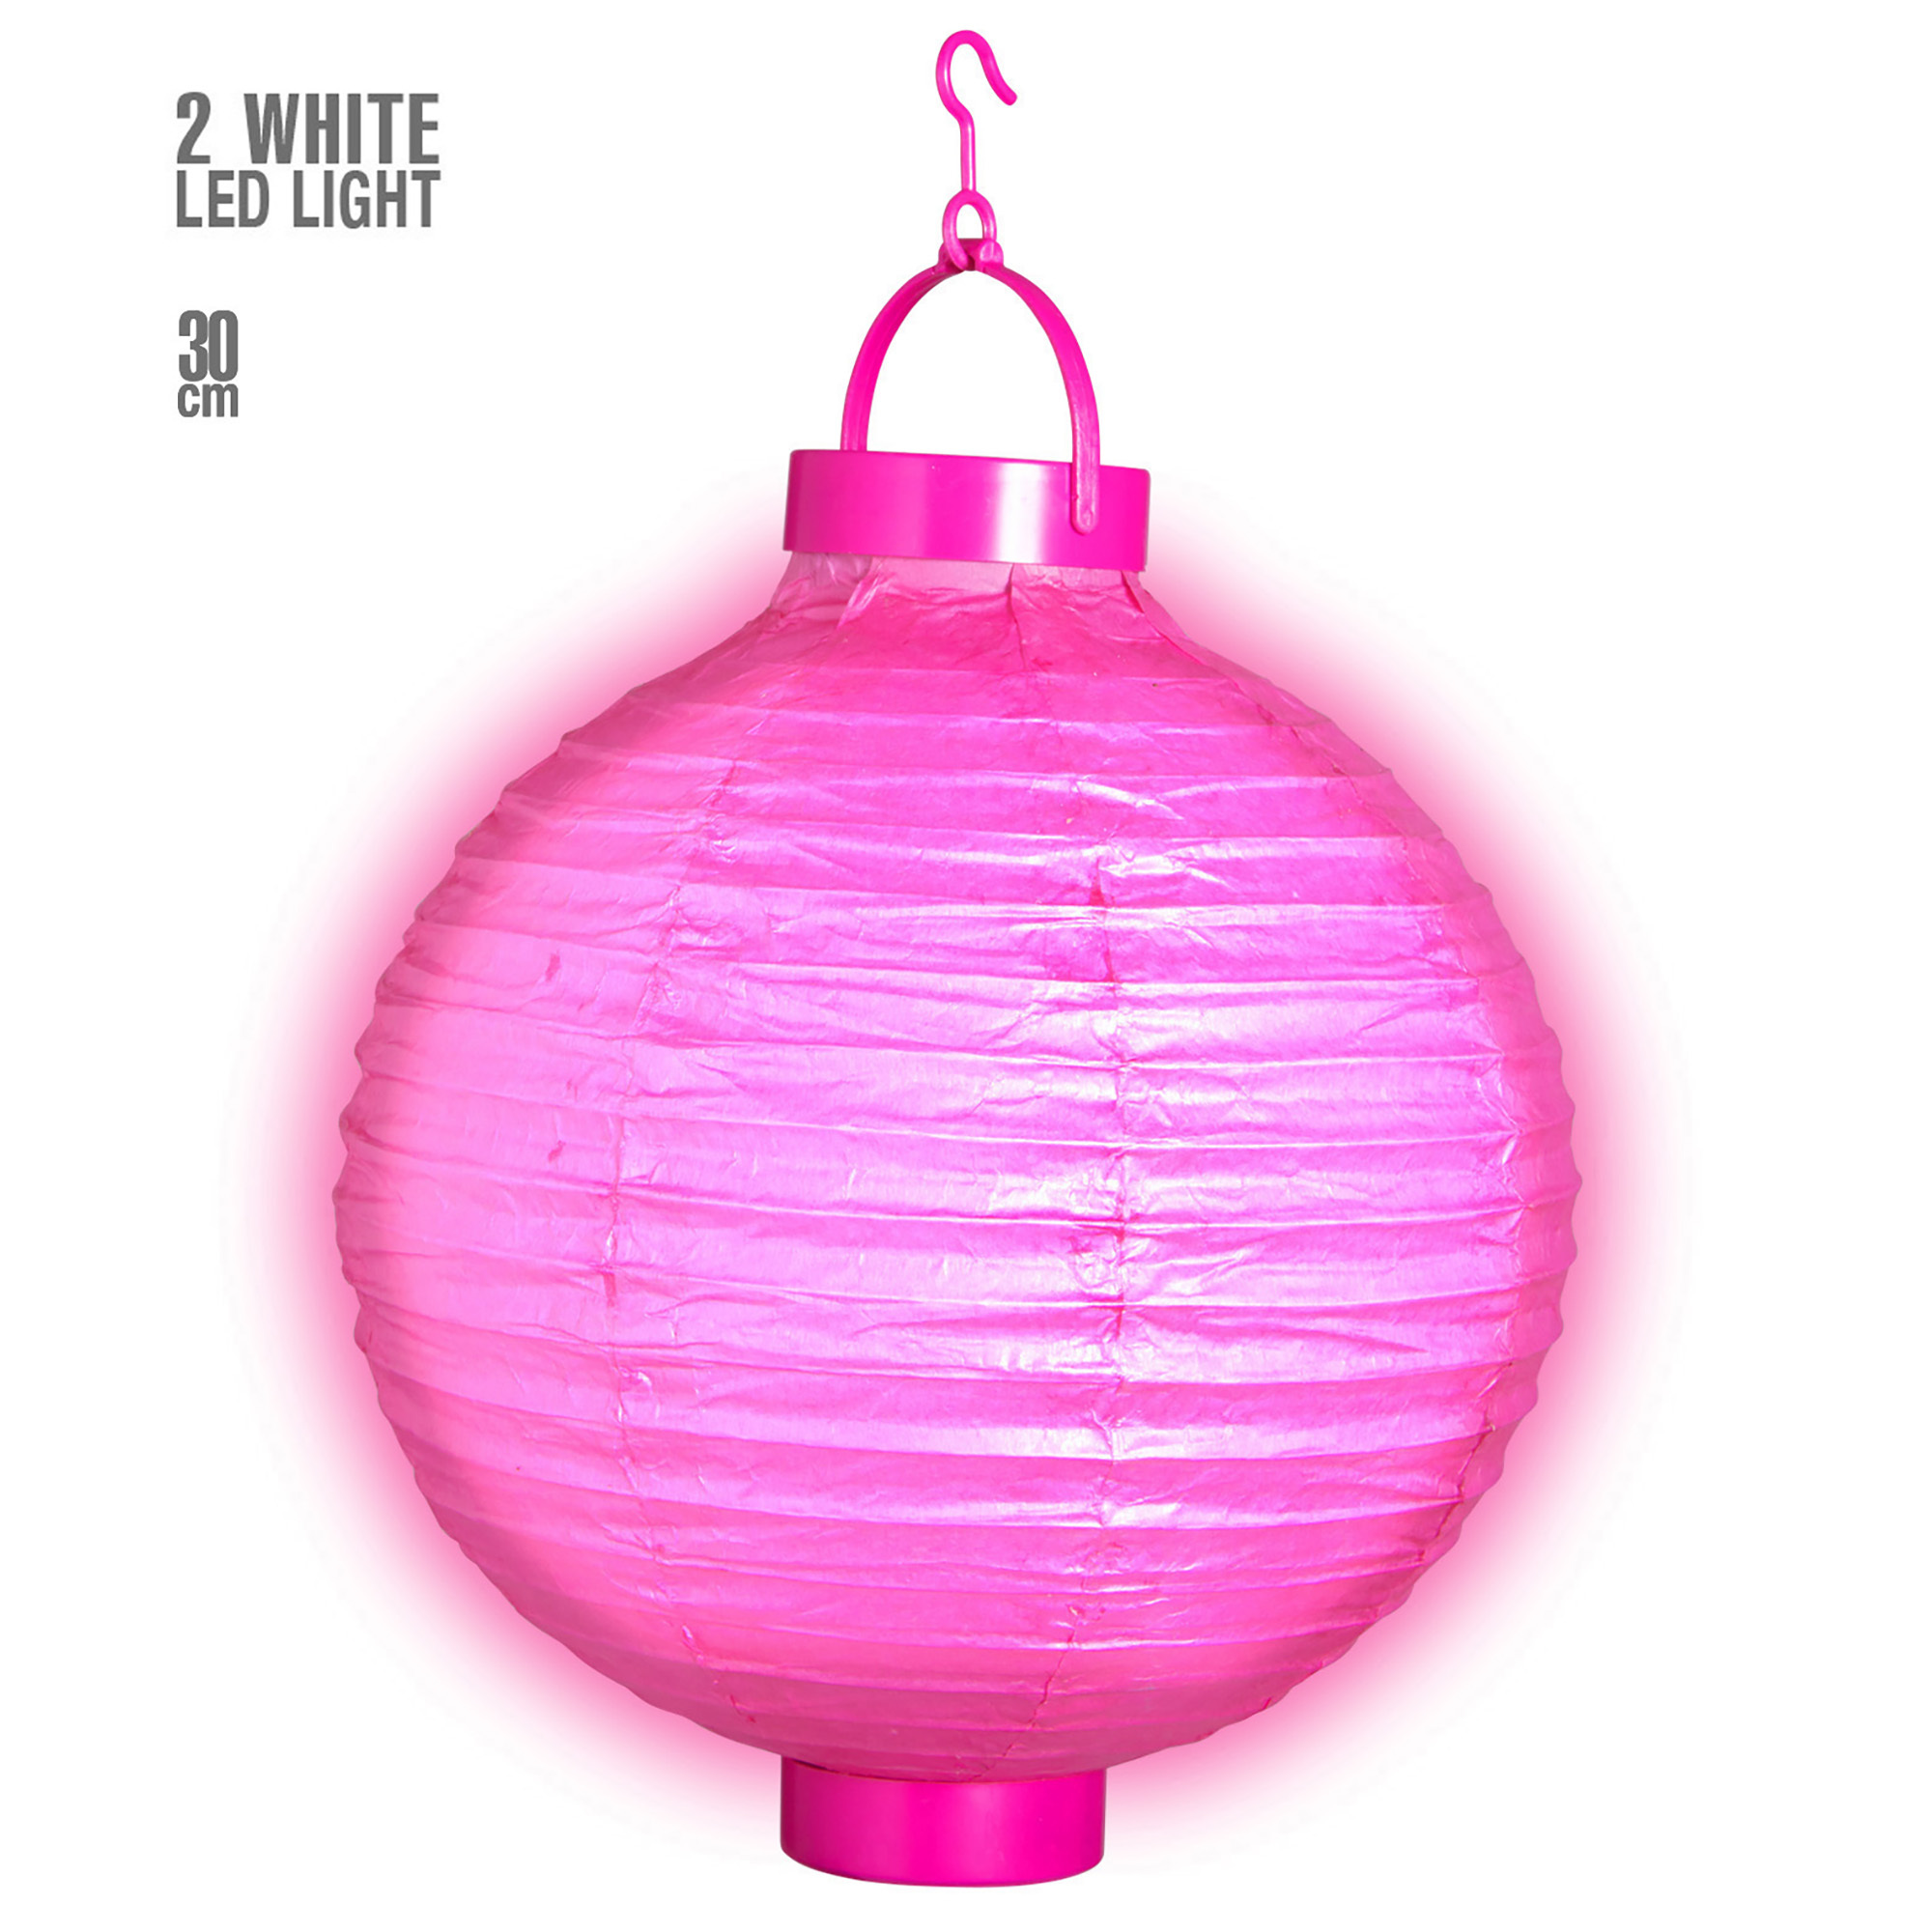 lampion met licht 30cm roze